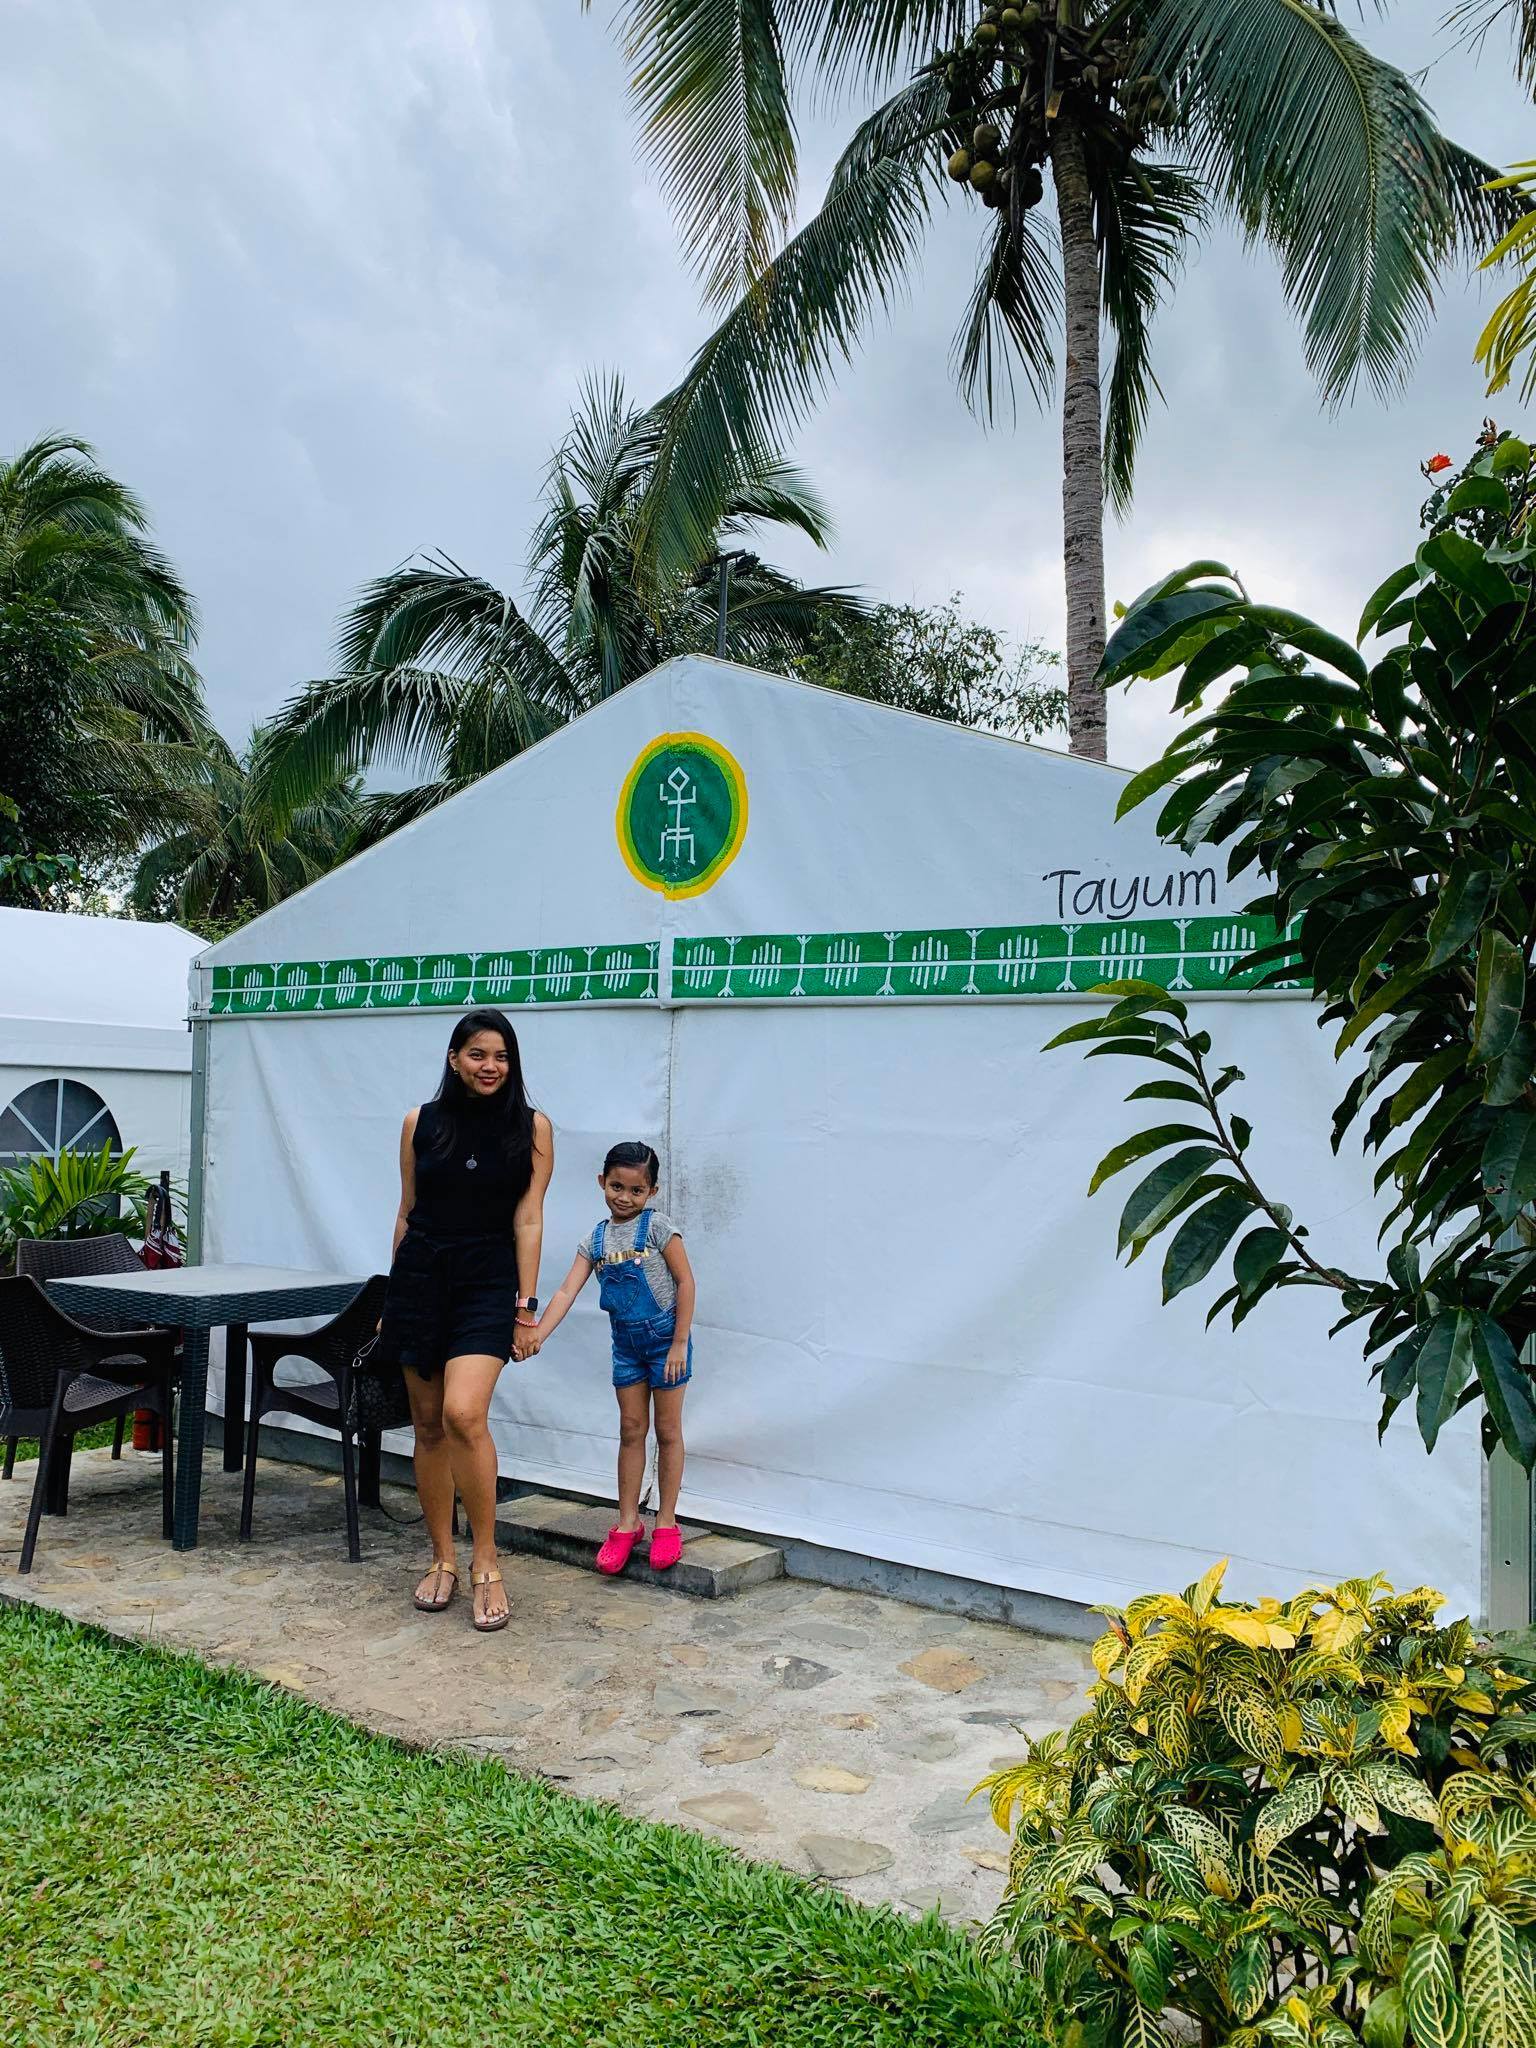 Our Stay in Nurture Wellness Village Resort in Tagaytay, Philippines